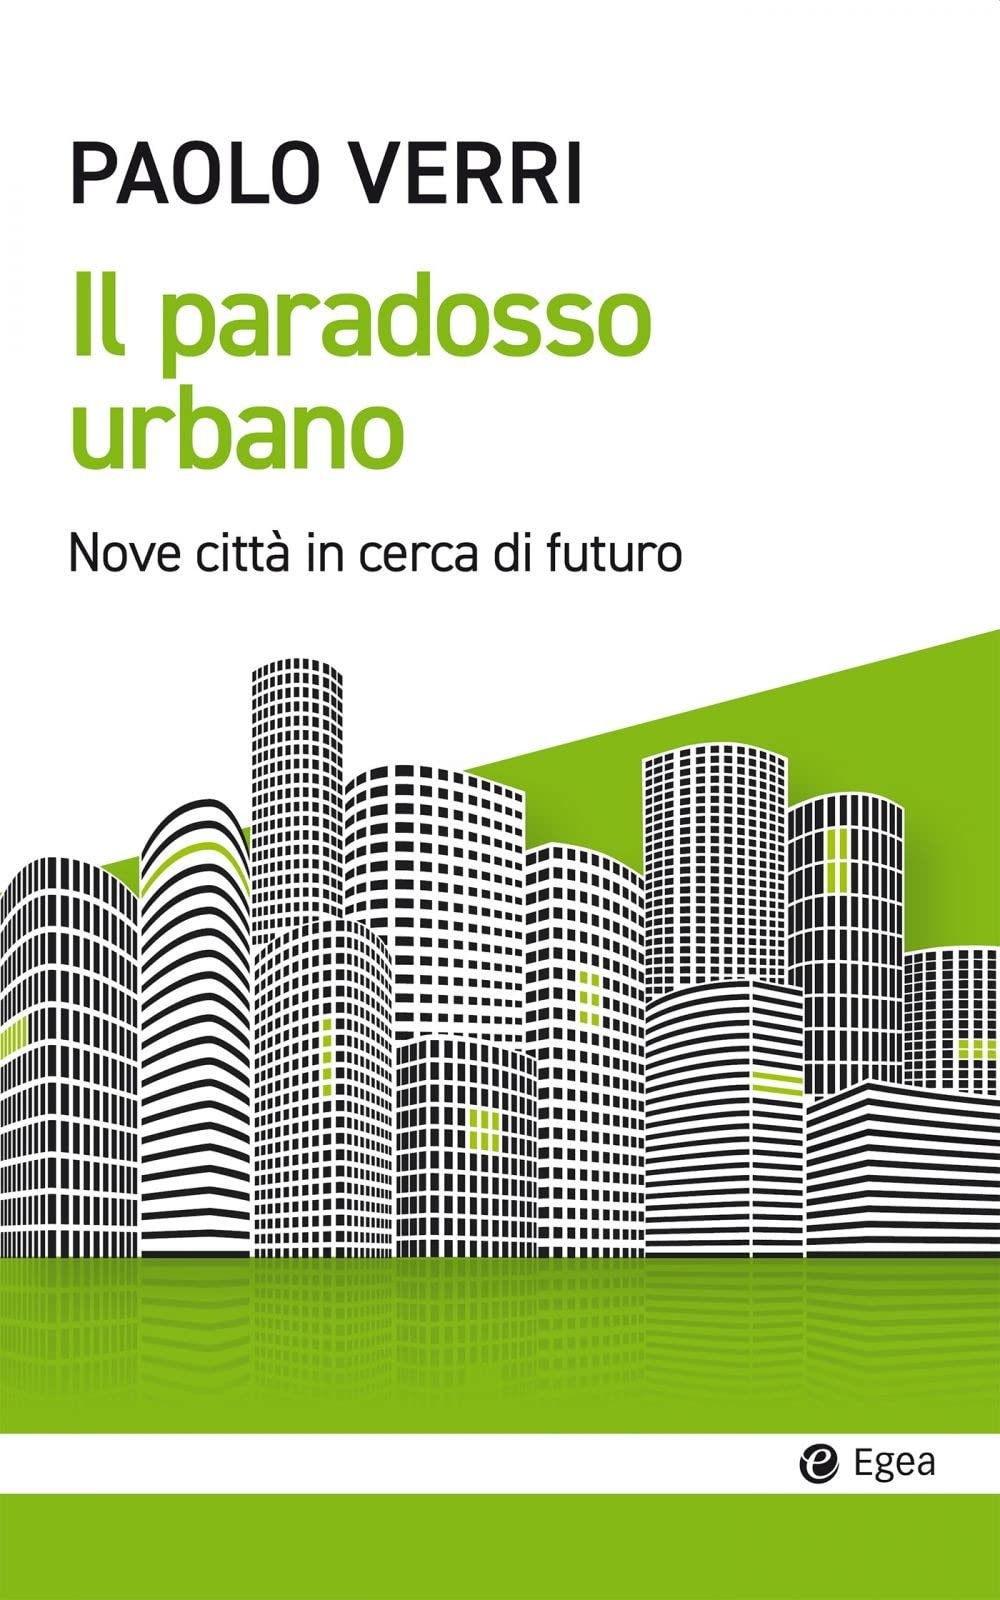 Paolo Verri – Il paradosso urbano (Egea, Milano 2022)